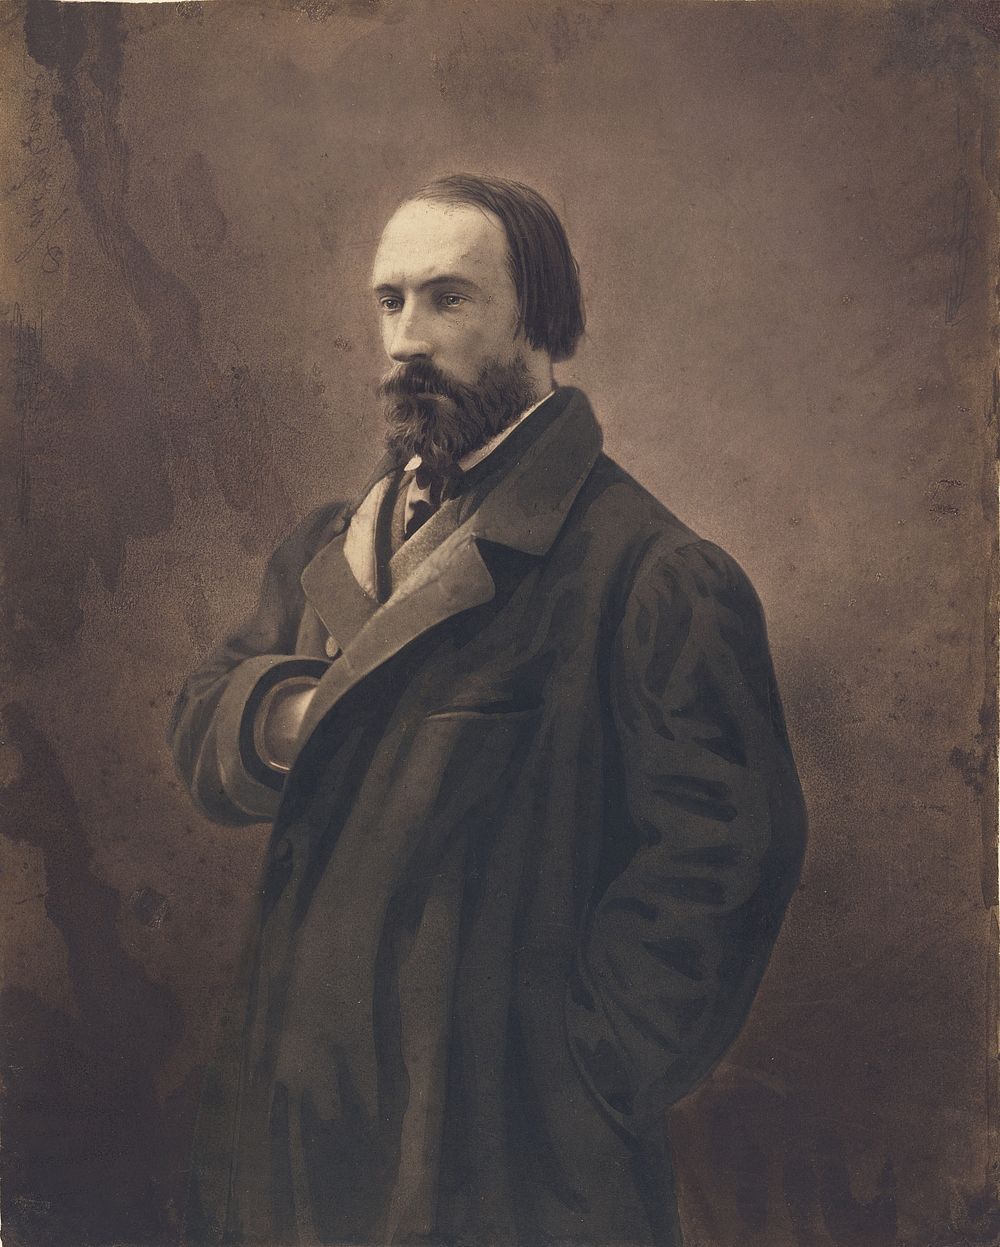 Auguste Vacquerie by Nadar Gaspard Félix Tournachon